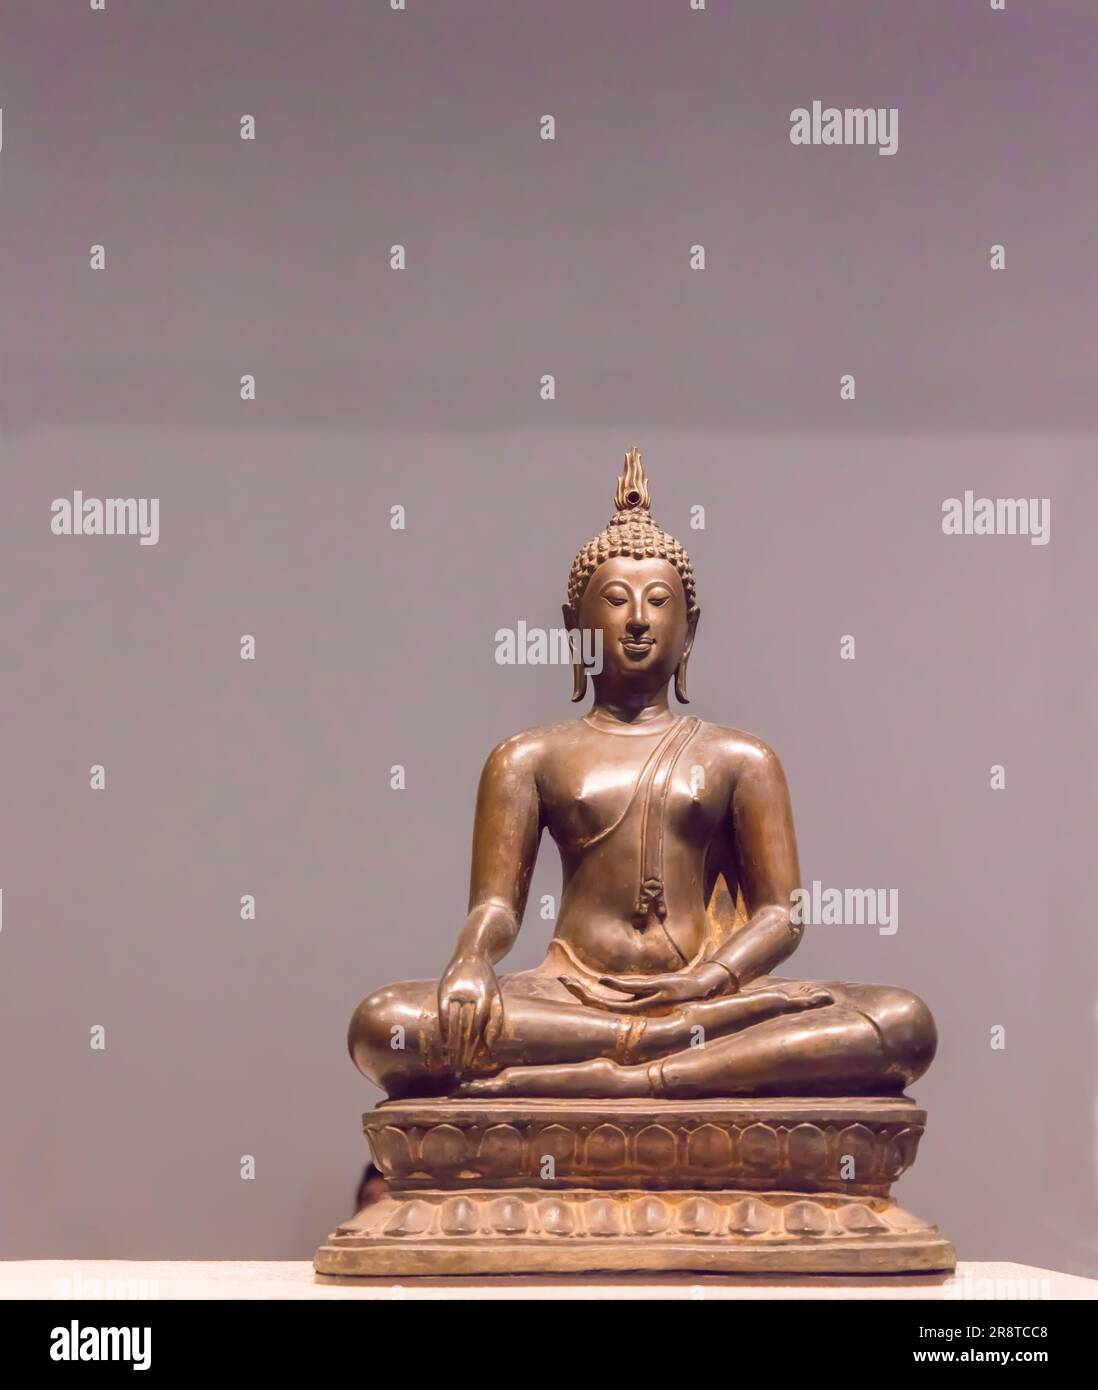 Statue de Budah Maraviyaha de Thaïlande 1400 - 1500 ce au Musée du Louvre, Abu Dhabi, eau avec espace de copie Banque D'Images